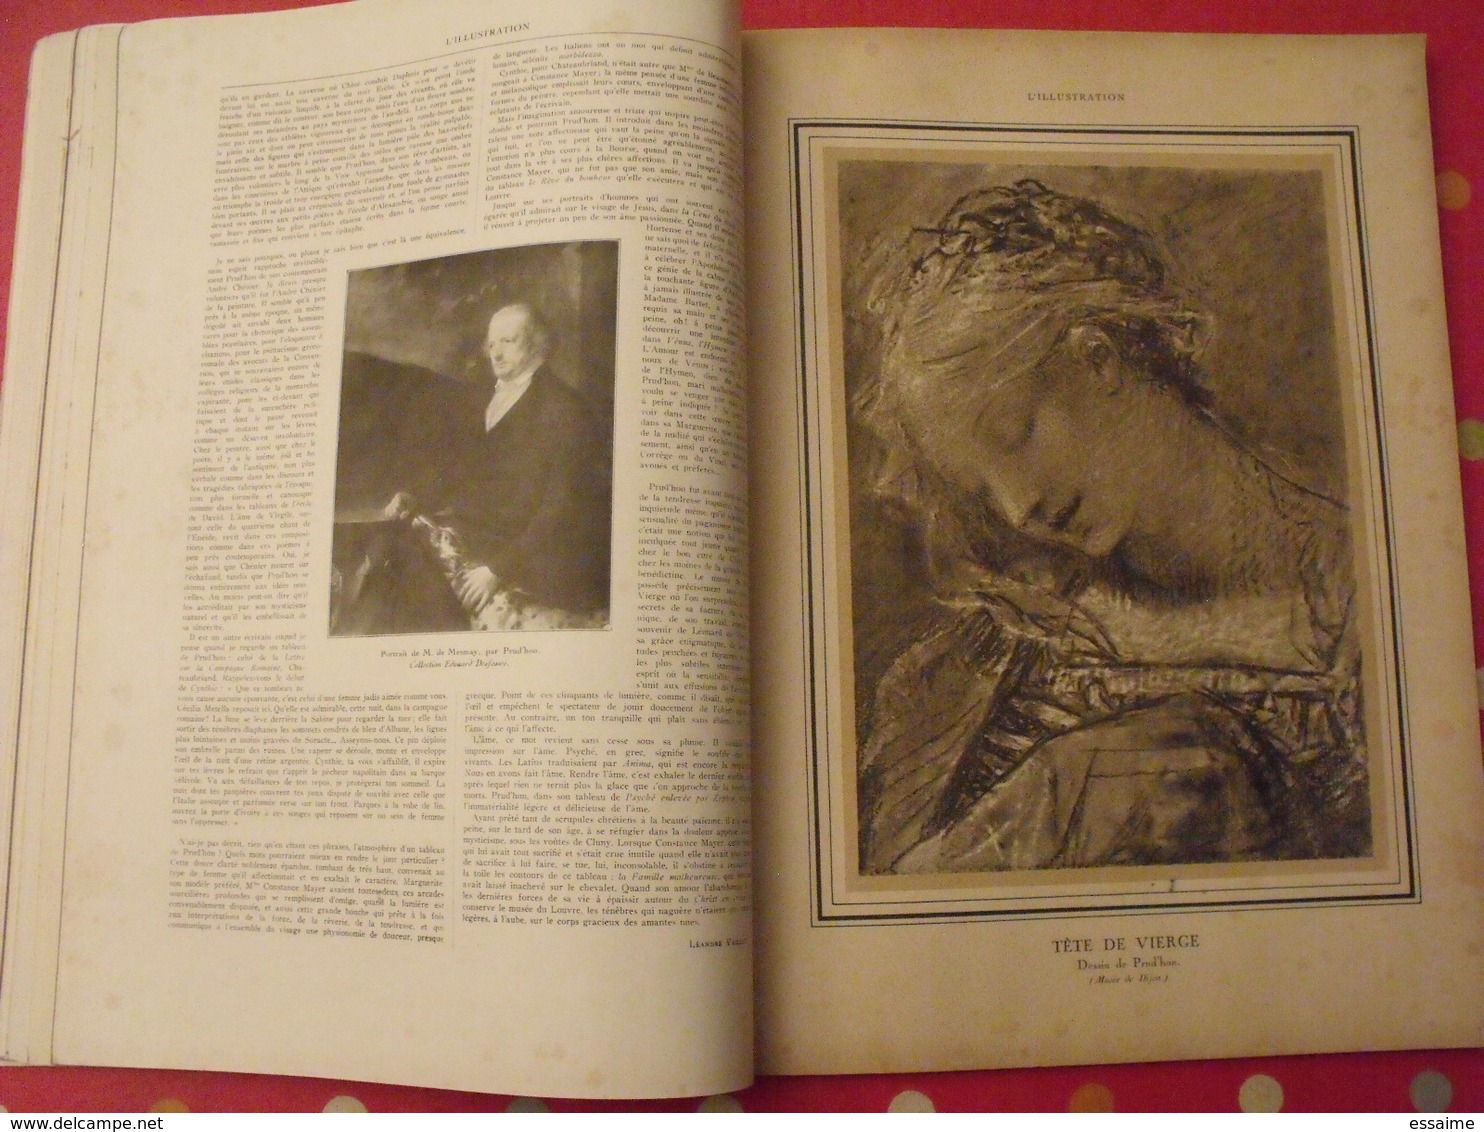 illustration n° 4132 du 13 mai 1922 spécial salon peinture. complet de ses images collées. la saison d'art de paris